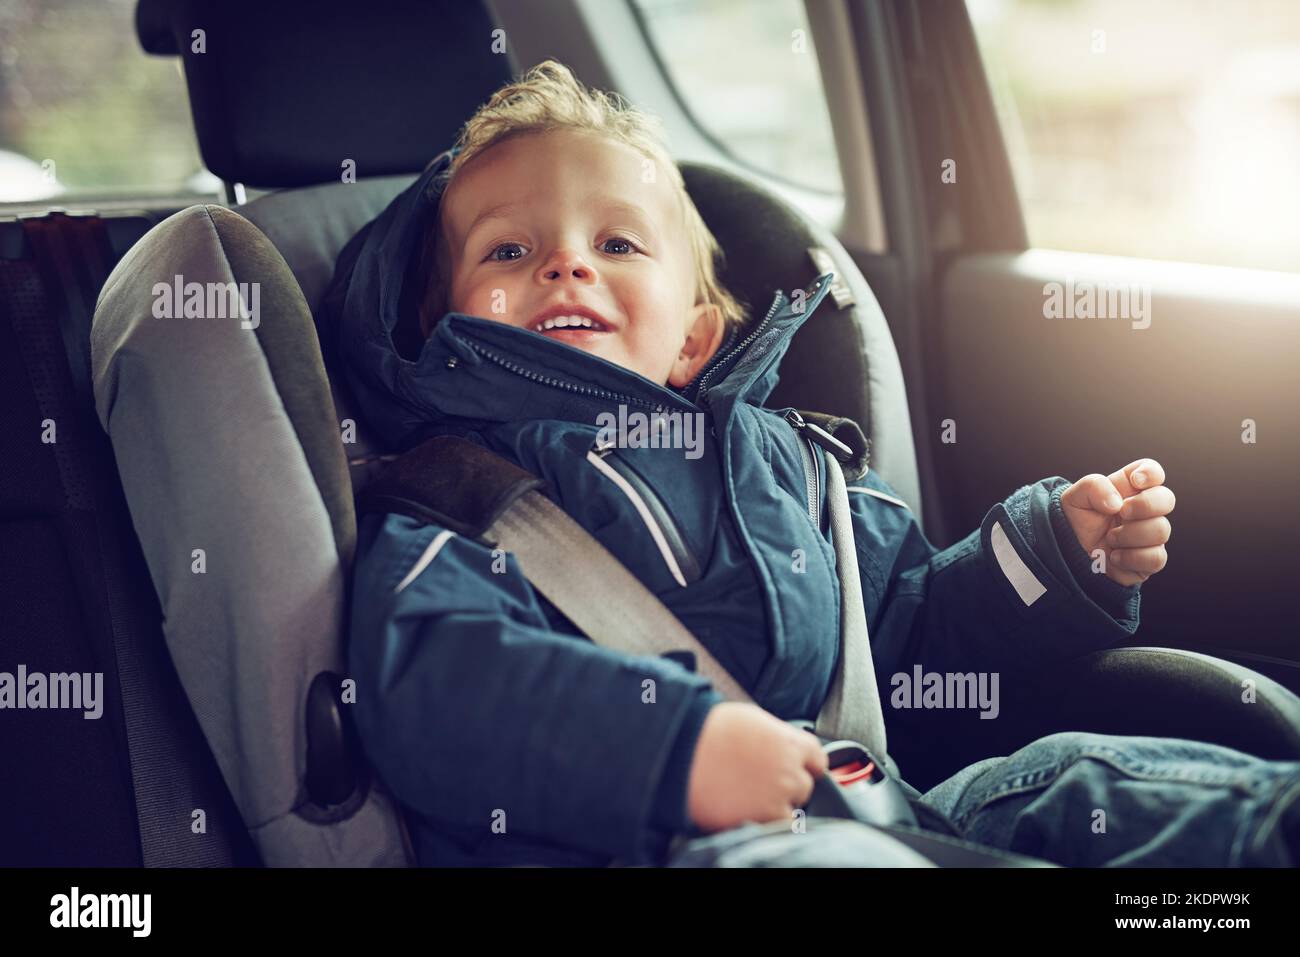 Tous les éléments sont attachés pour un trajet sur route. Portrait d'un adorable petit garçon assis dans un siège d'auto. Banque D'Images